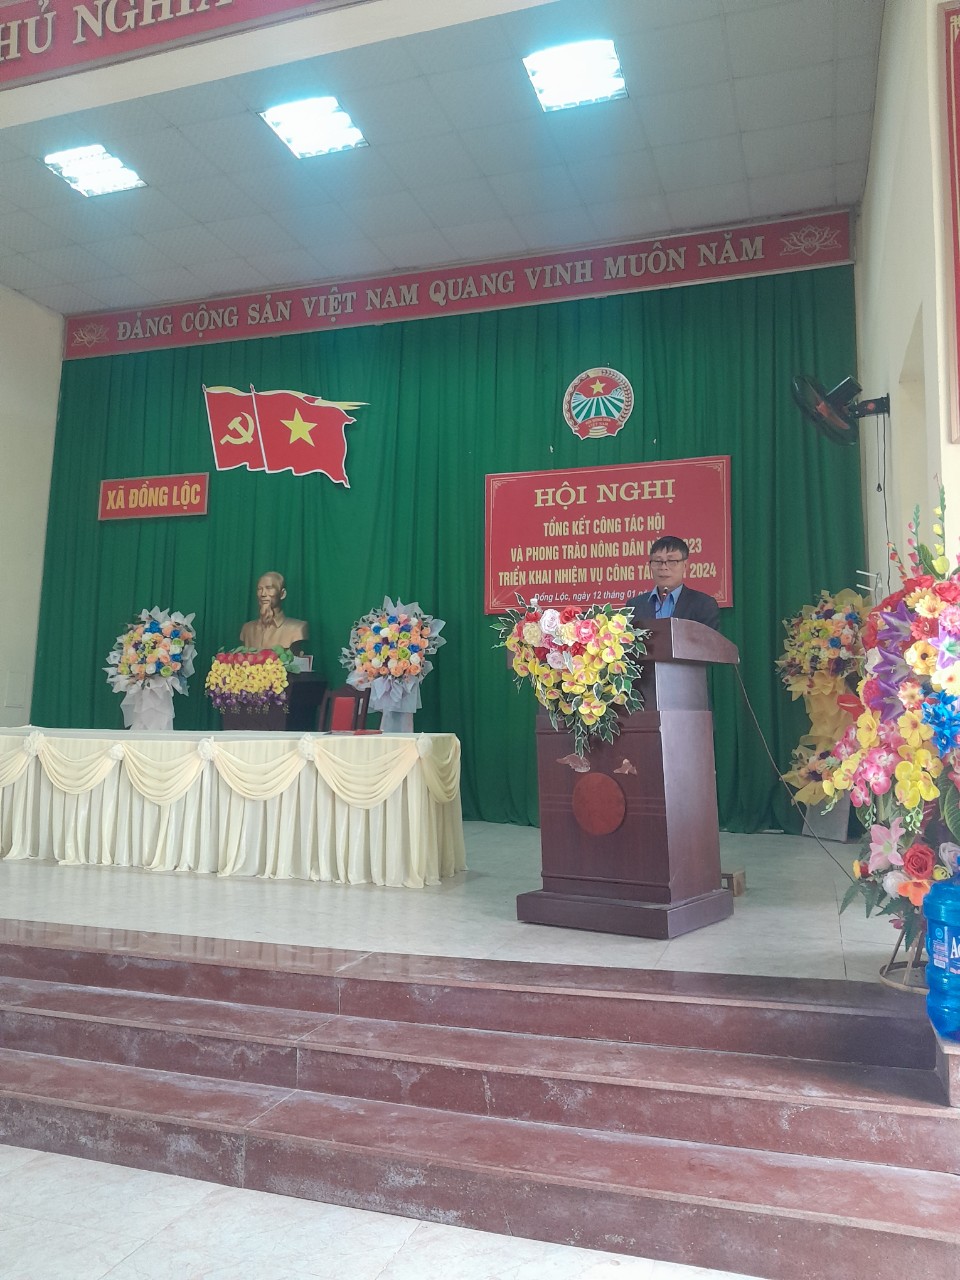 Hội Nông dân xã Đồng Lộc tổ chức tổng kết công tác hội và phong trào nông dân năm 2023, triển khai phương hướng nhiệm vụ năm 2024